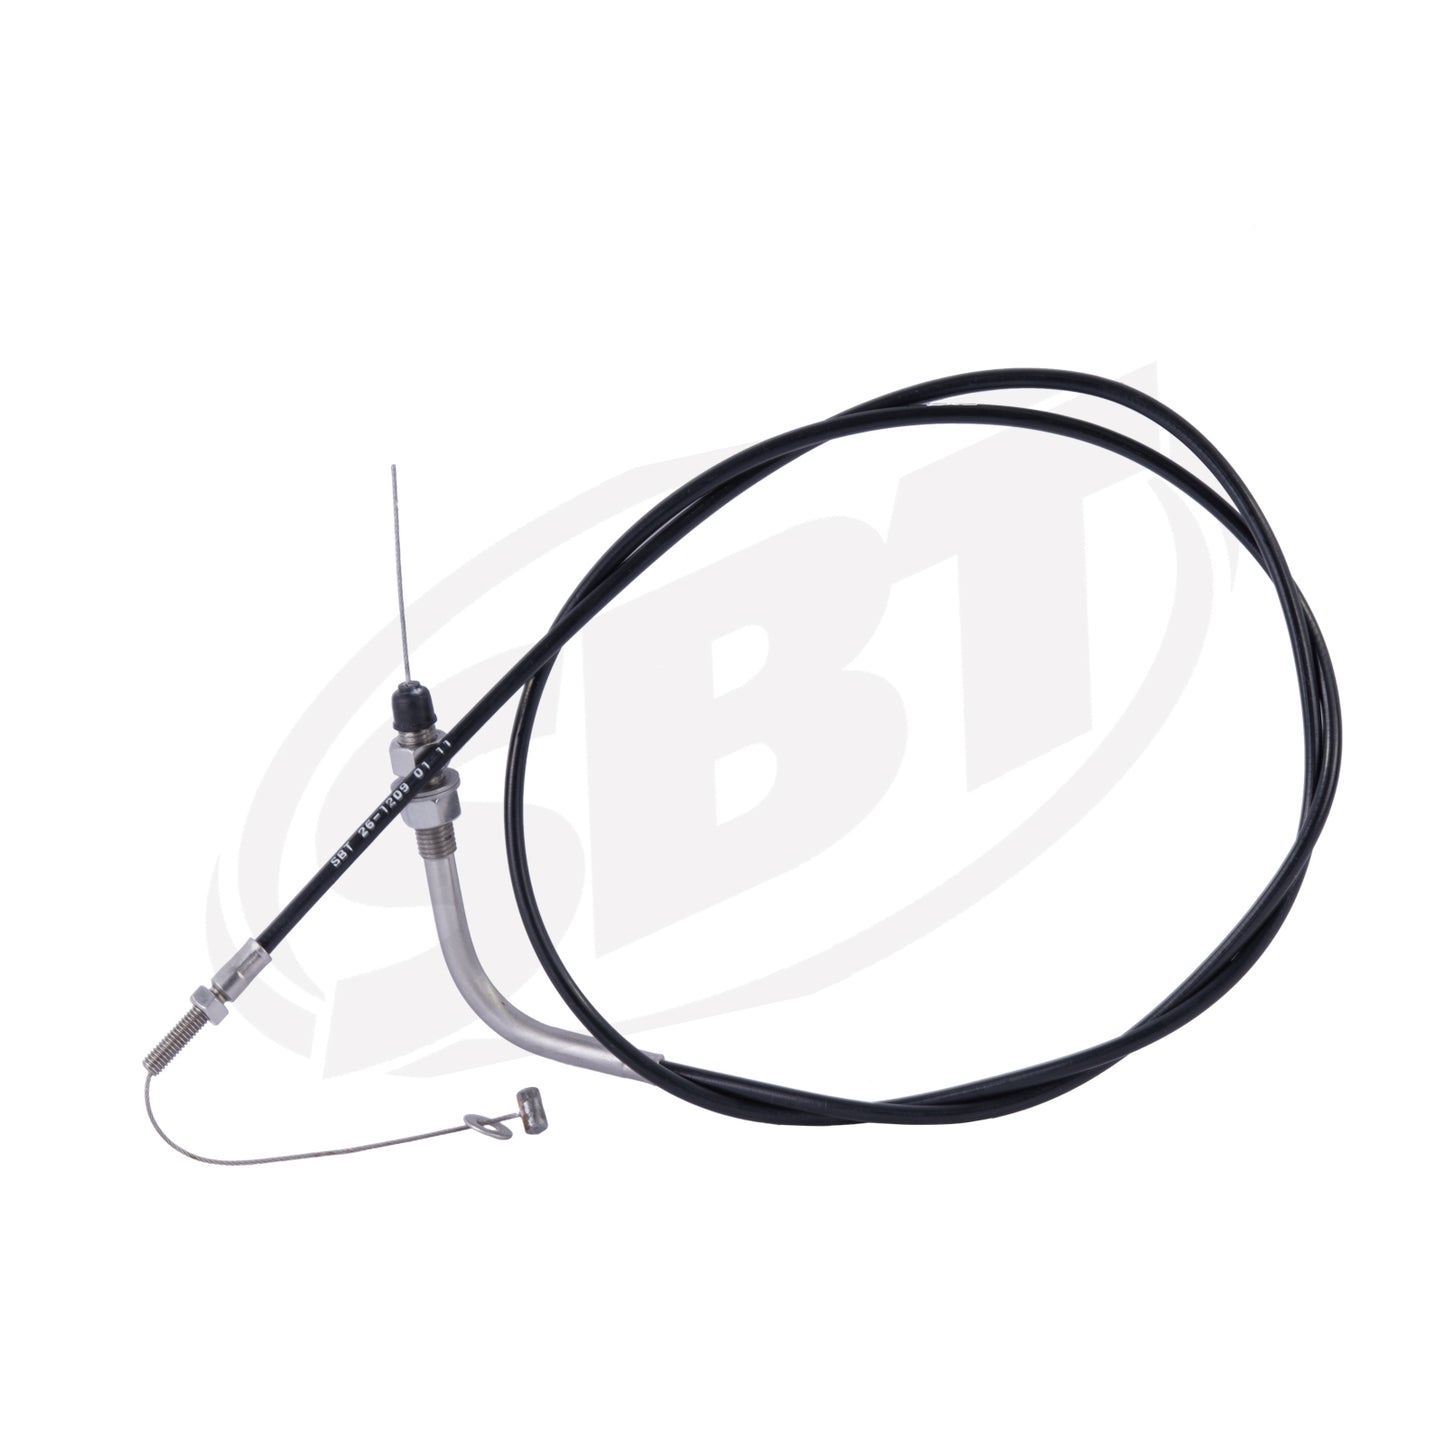 SBT Kawasaki Choke Cable 900 STX 59401-3726 2001 2002 2003 ( PRE ORDER )